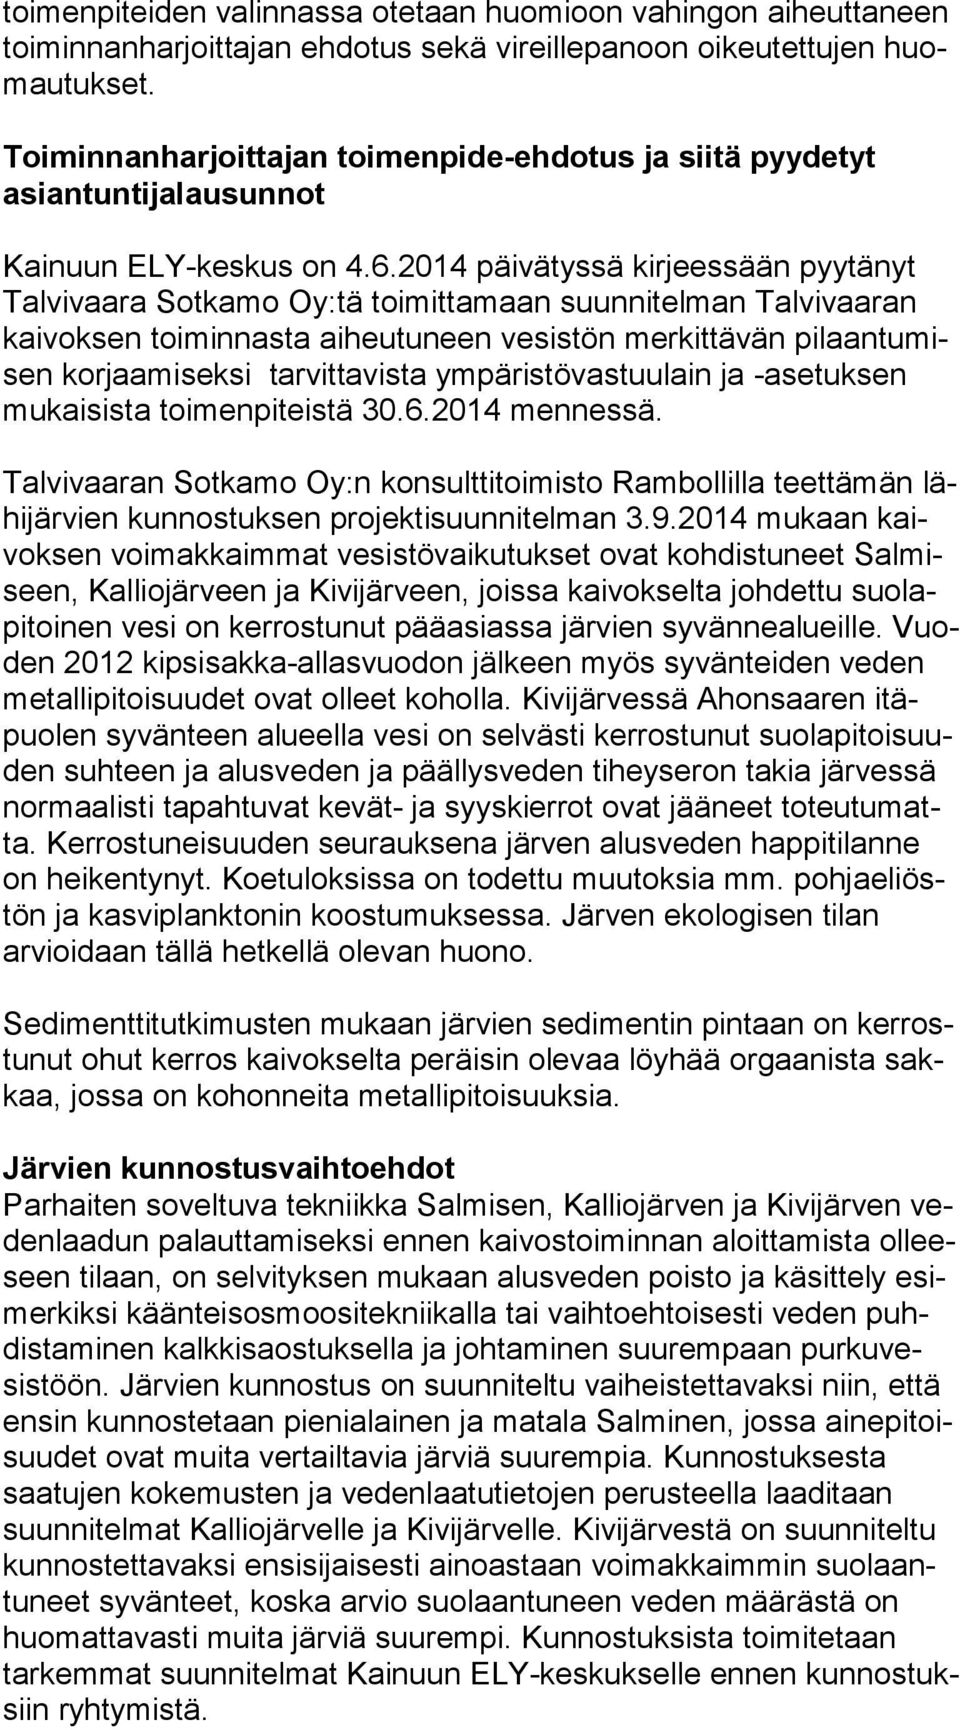 2014 päivätyssä kirjeessään pyytänyt Tal vi vaa ra Sotkamo Oy:tä toimittamaan suunnitelman Talvivaaran kai vok sen toiminnasta aiheutuneen vesistön merkittävän pi laan tu misen korjaamiseksi